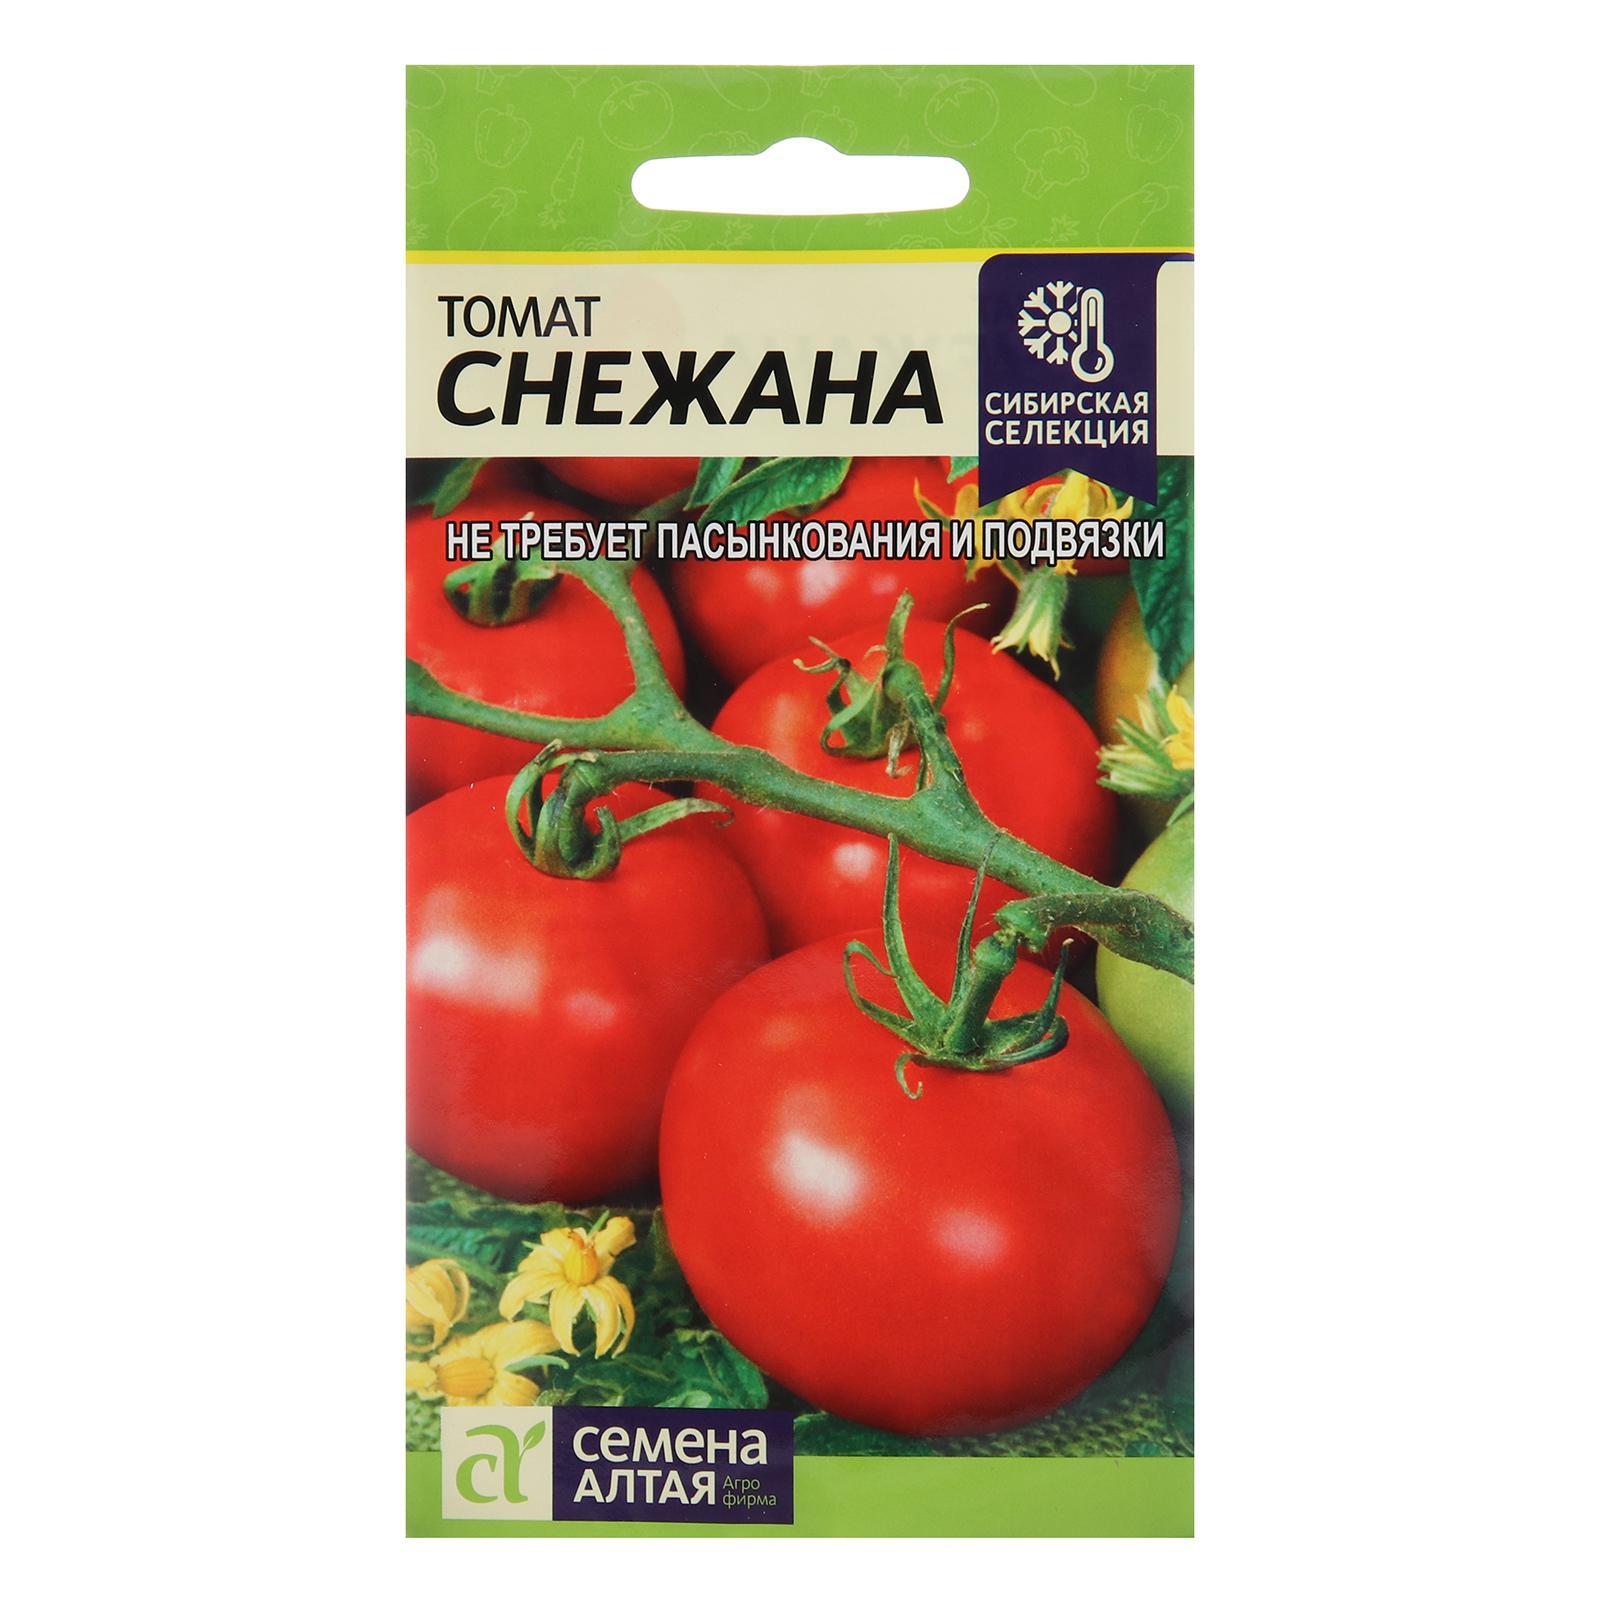 Сибирская селекция семена Алтая томаты